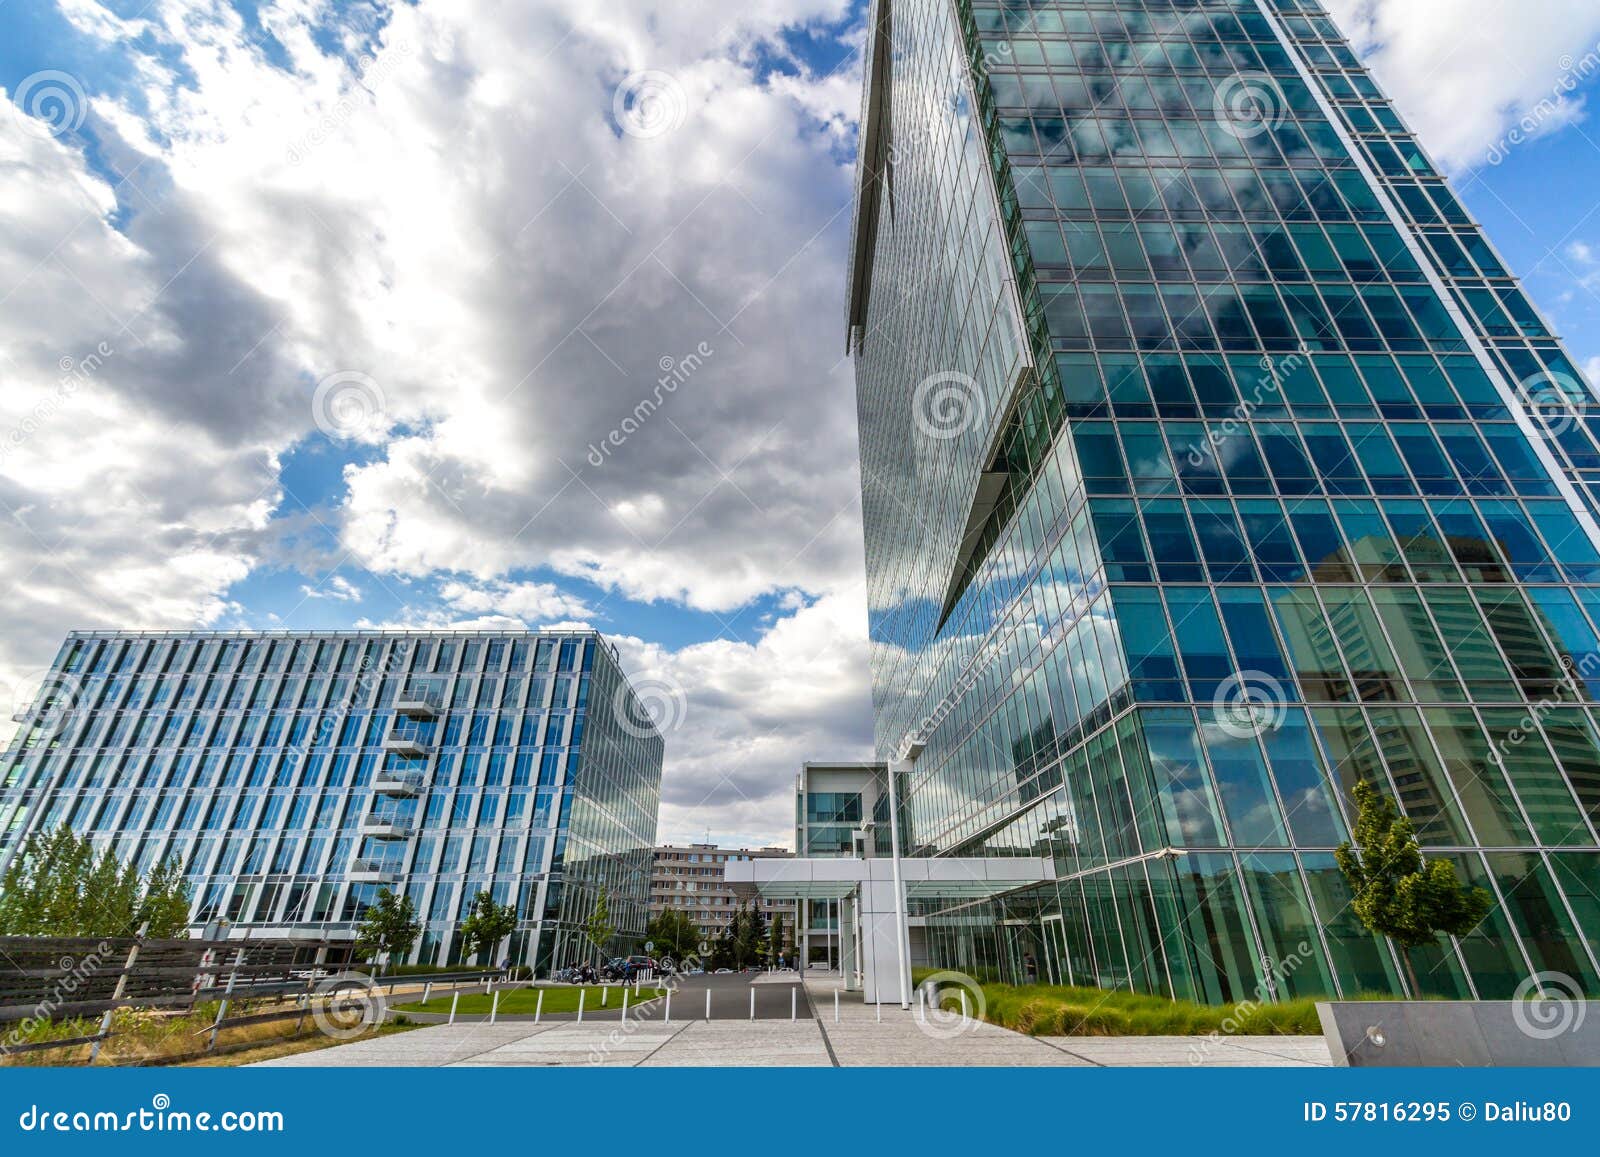 Les immeubles de bureaux réfléchissants en verre contre le ciel bleu avec les nuages et le soleil s'allument, République Tchèque